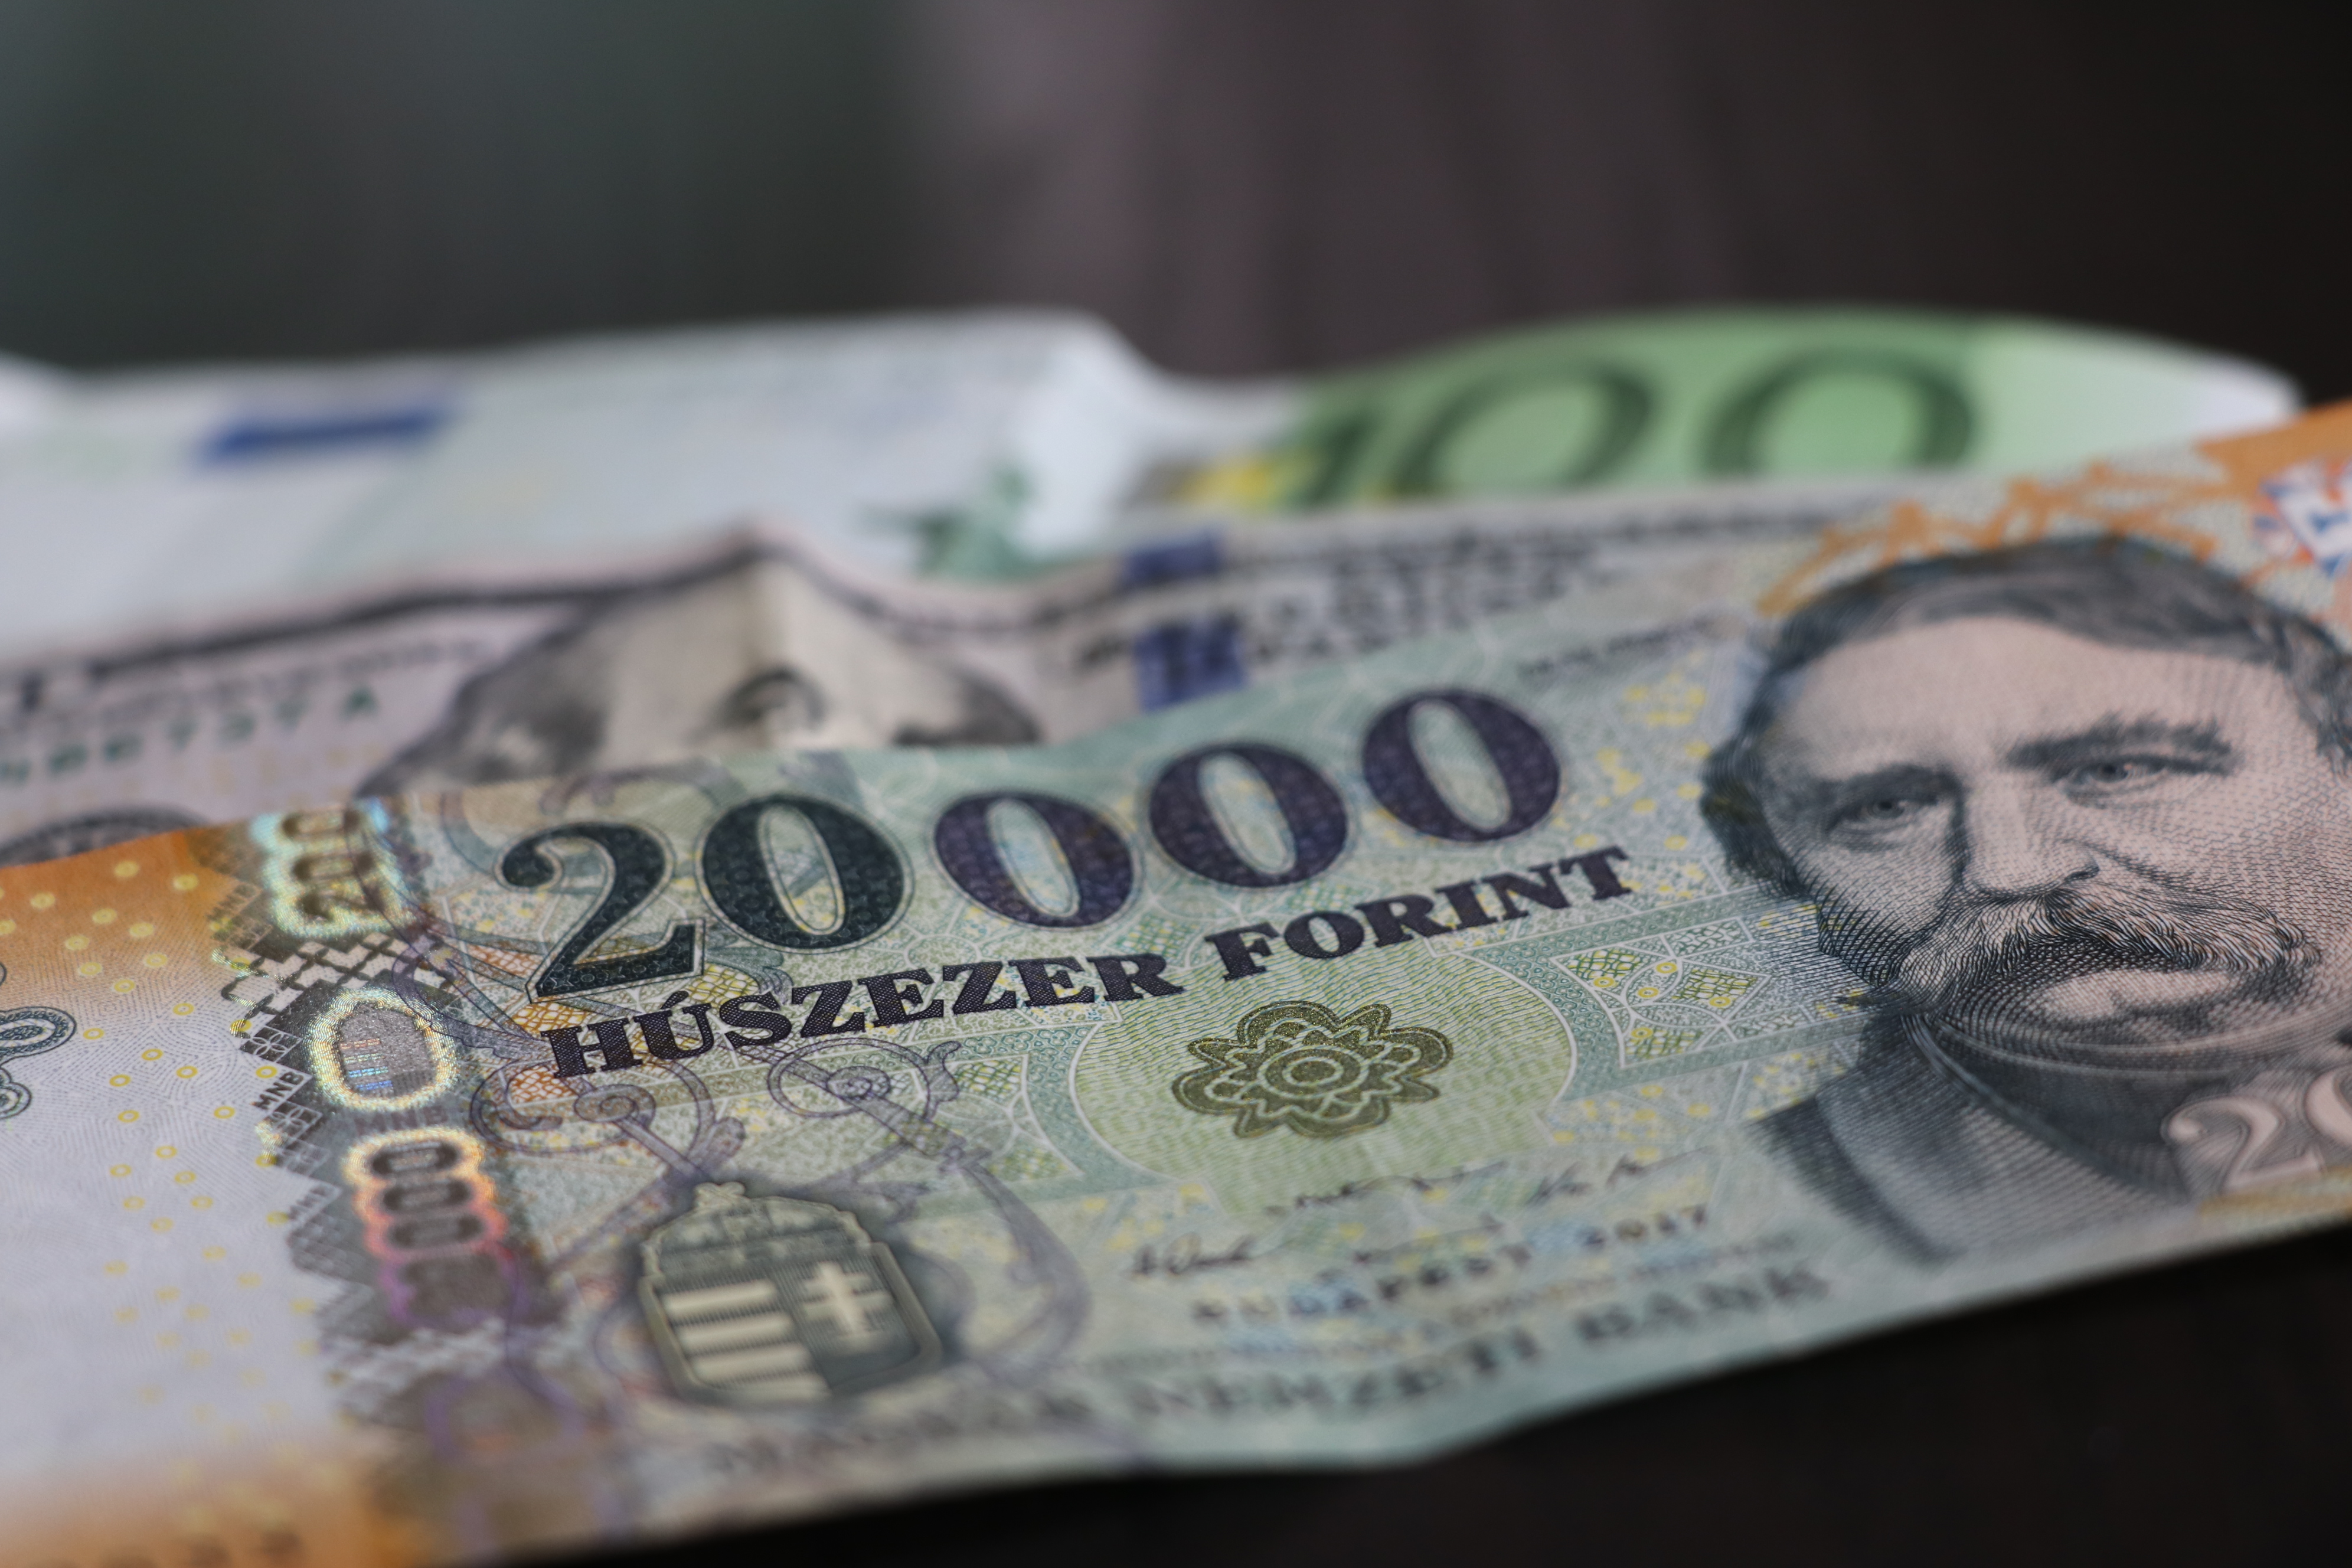 काटो अल्पर दैनिक समाचार हंगरी फ़ोरिंट डॉलर हंगरी